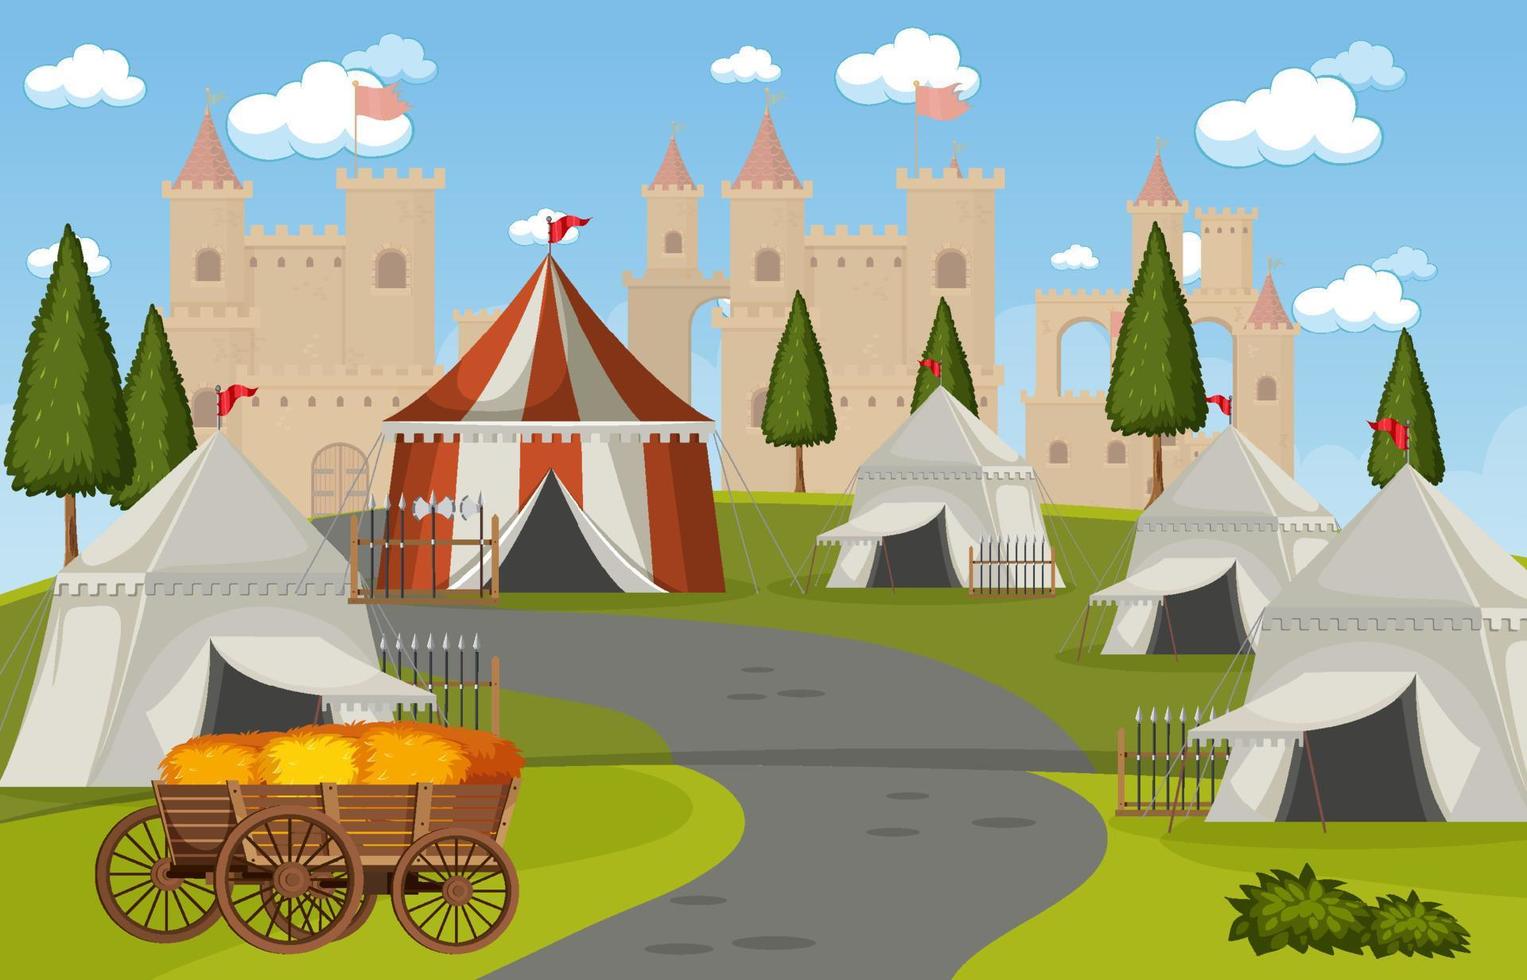 militärt medeltida läger med tält och slott vektor